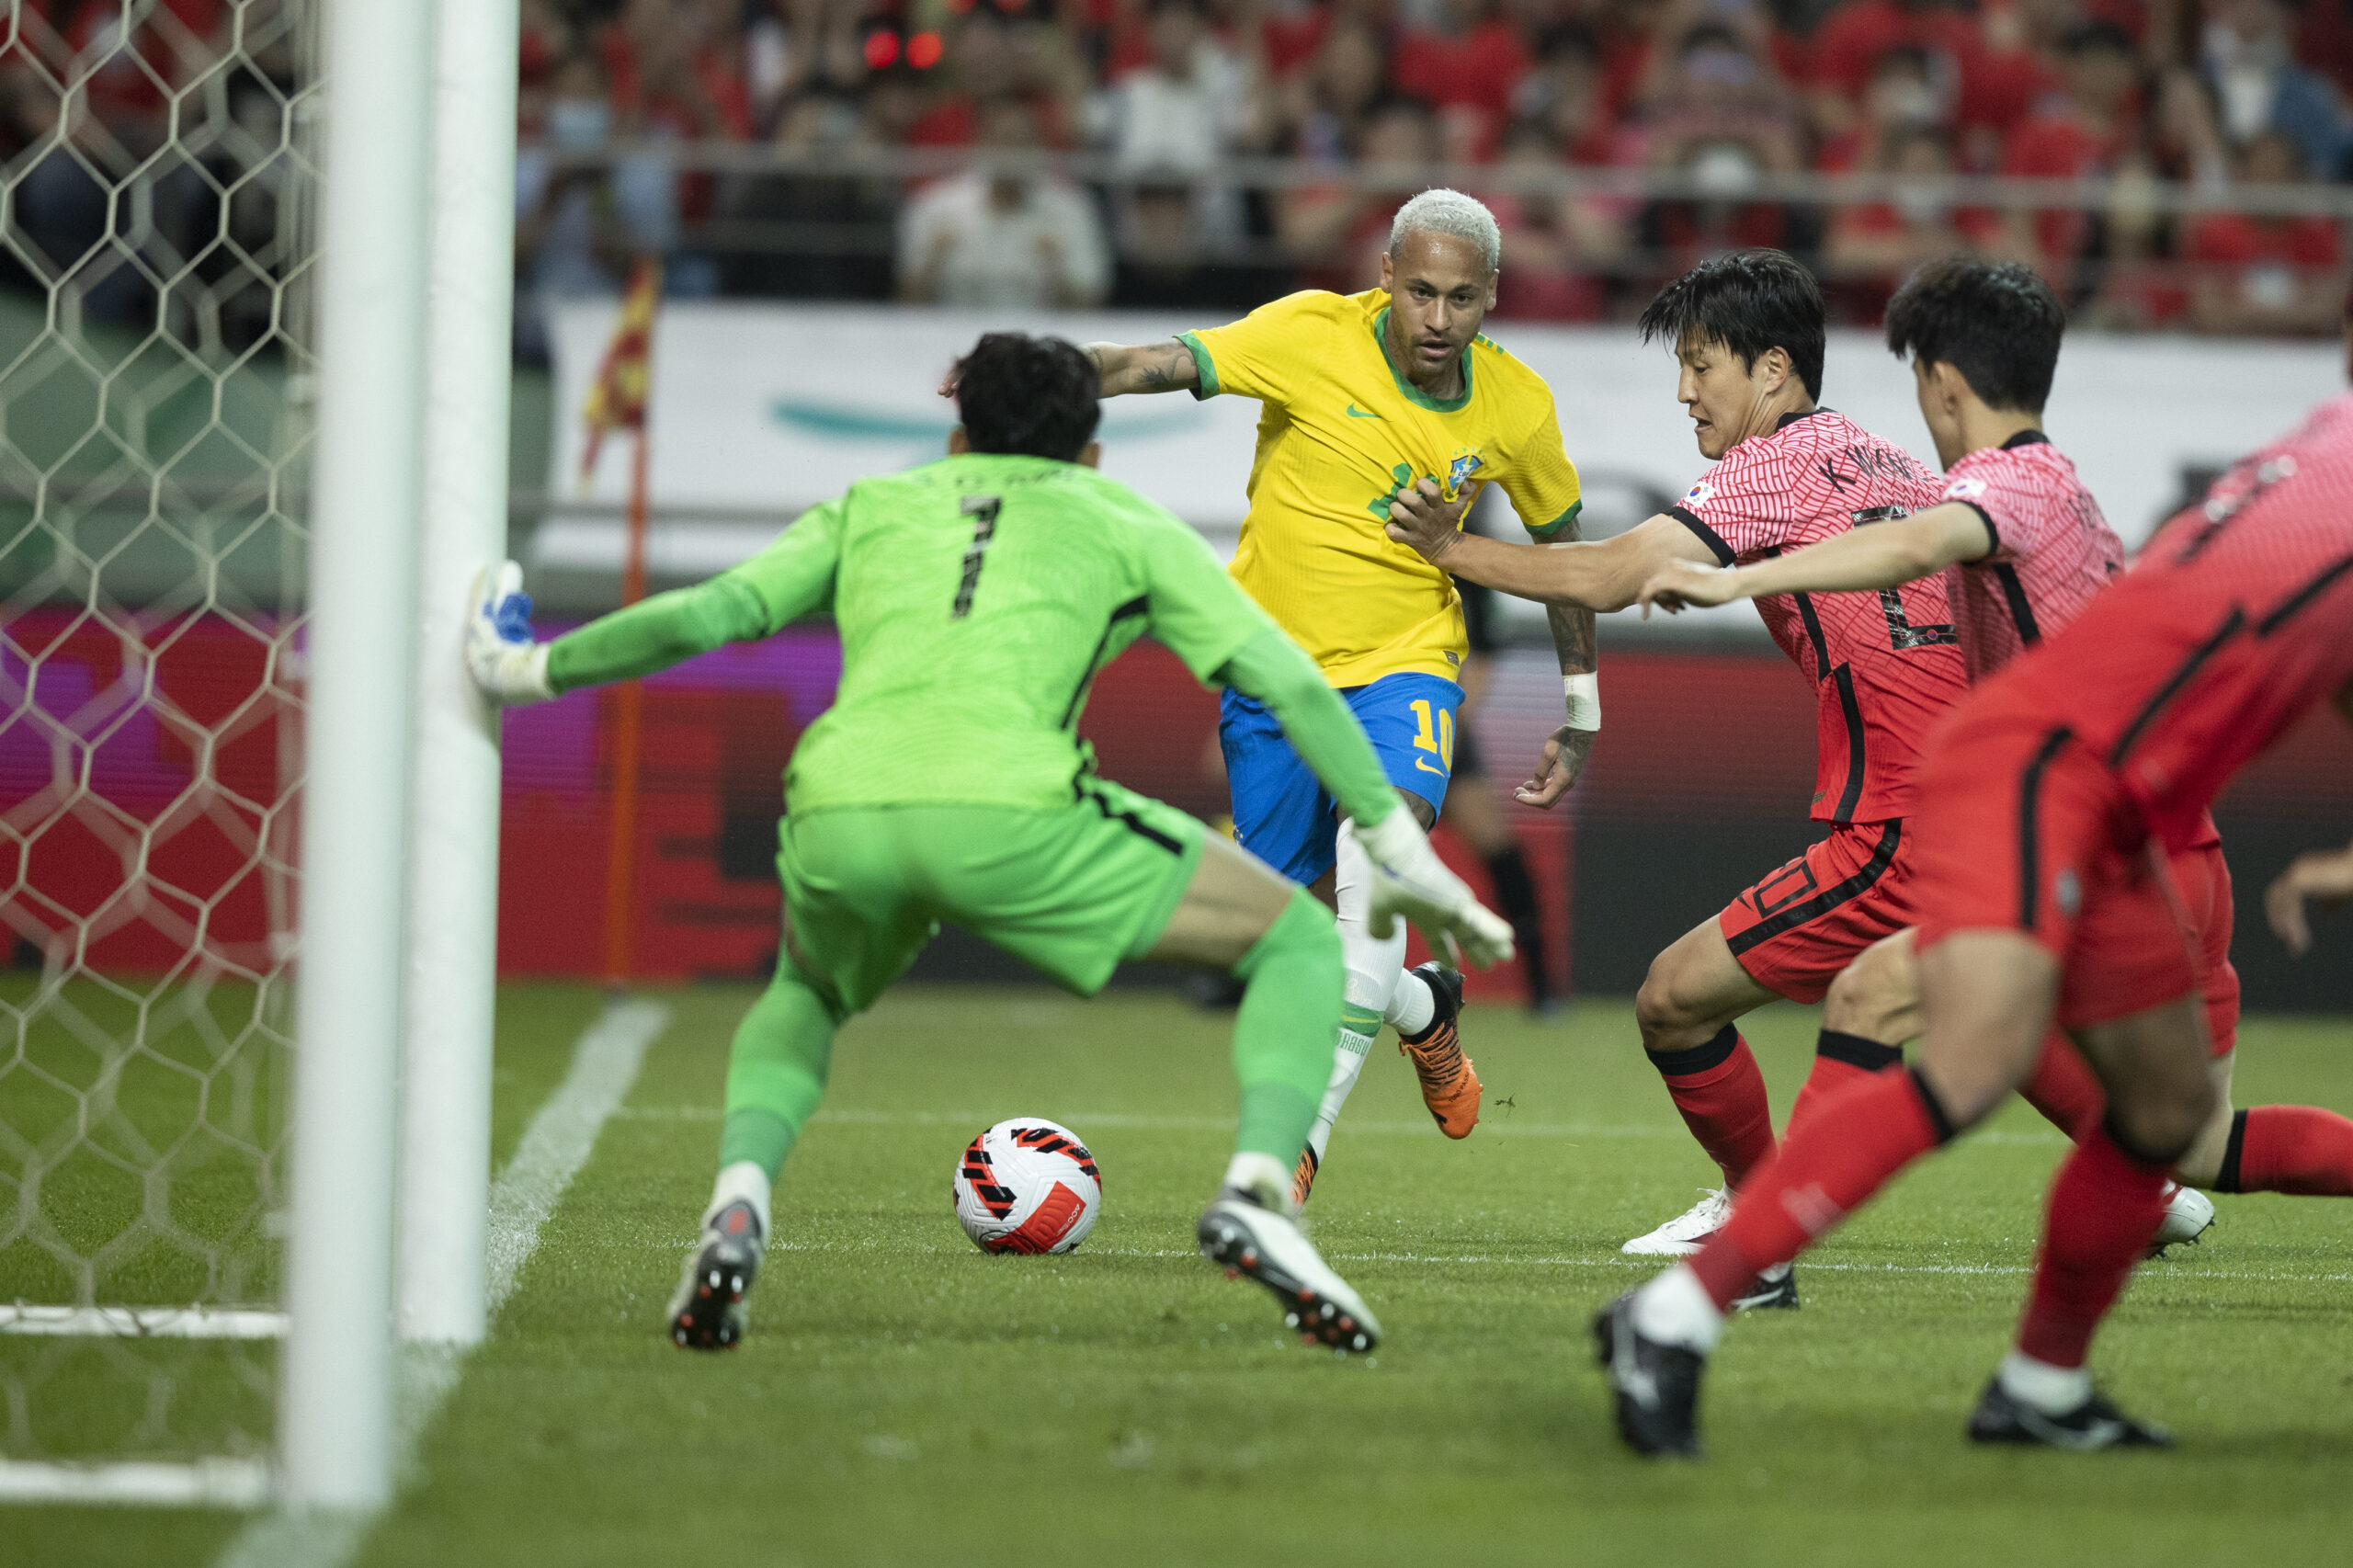 Brasil vence Coreia do Sul em último jogo do ano da seleção